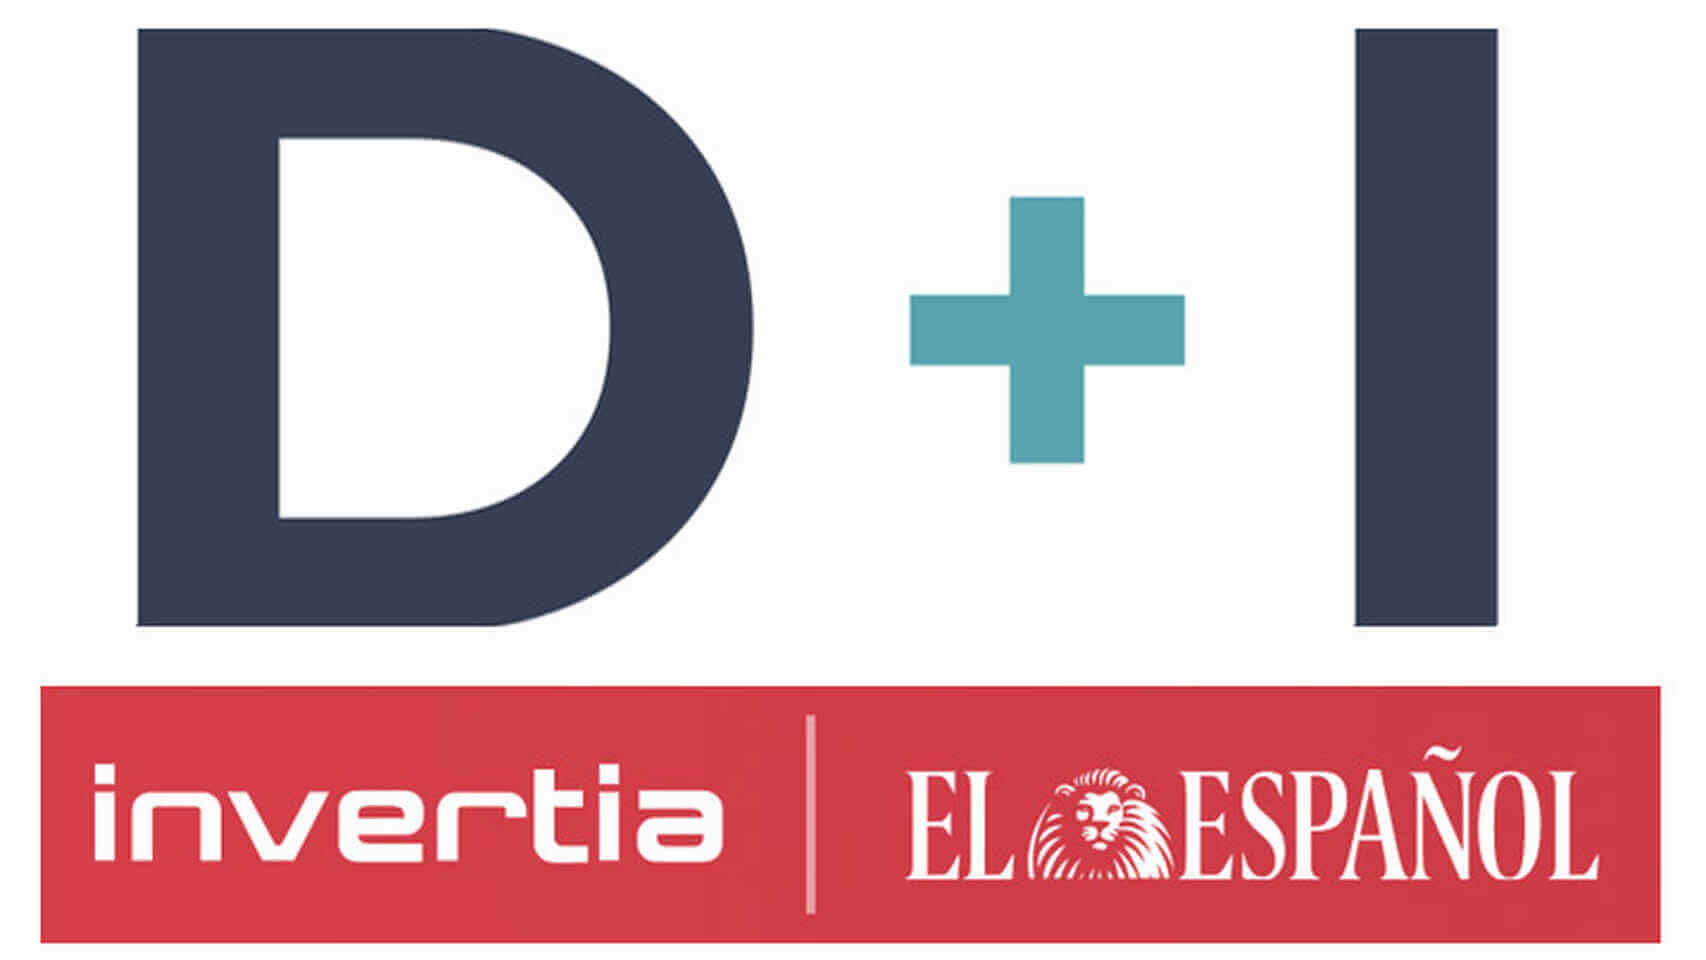 logo-Invertia-El-espanol-1